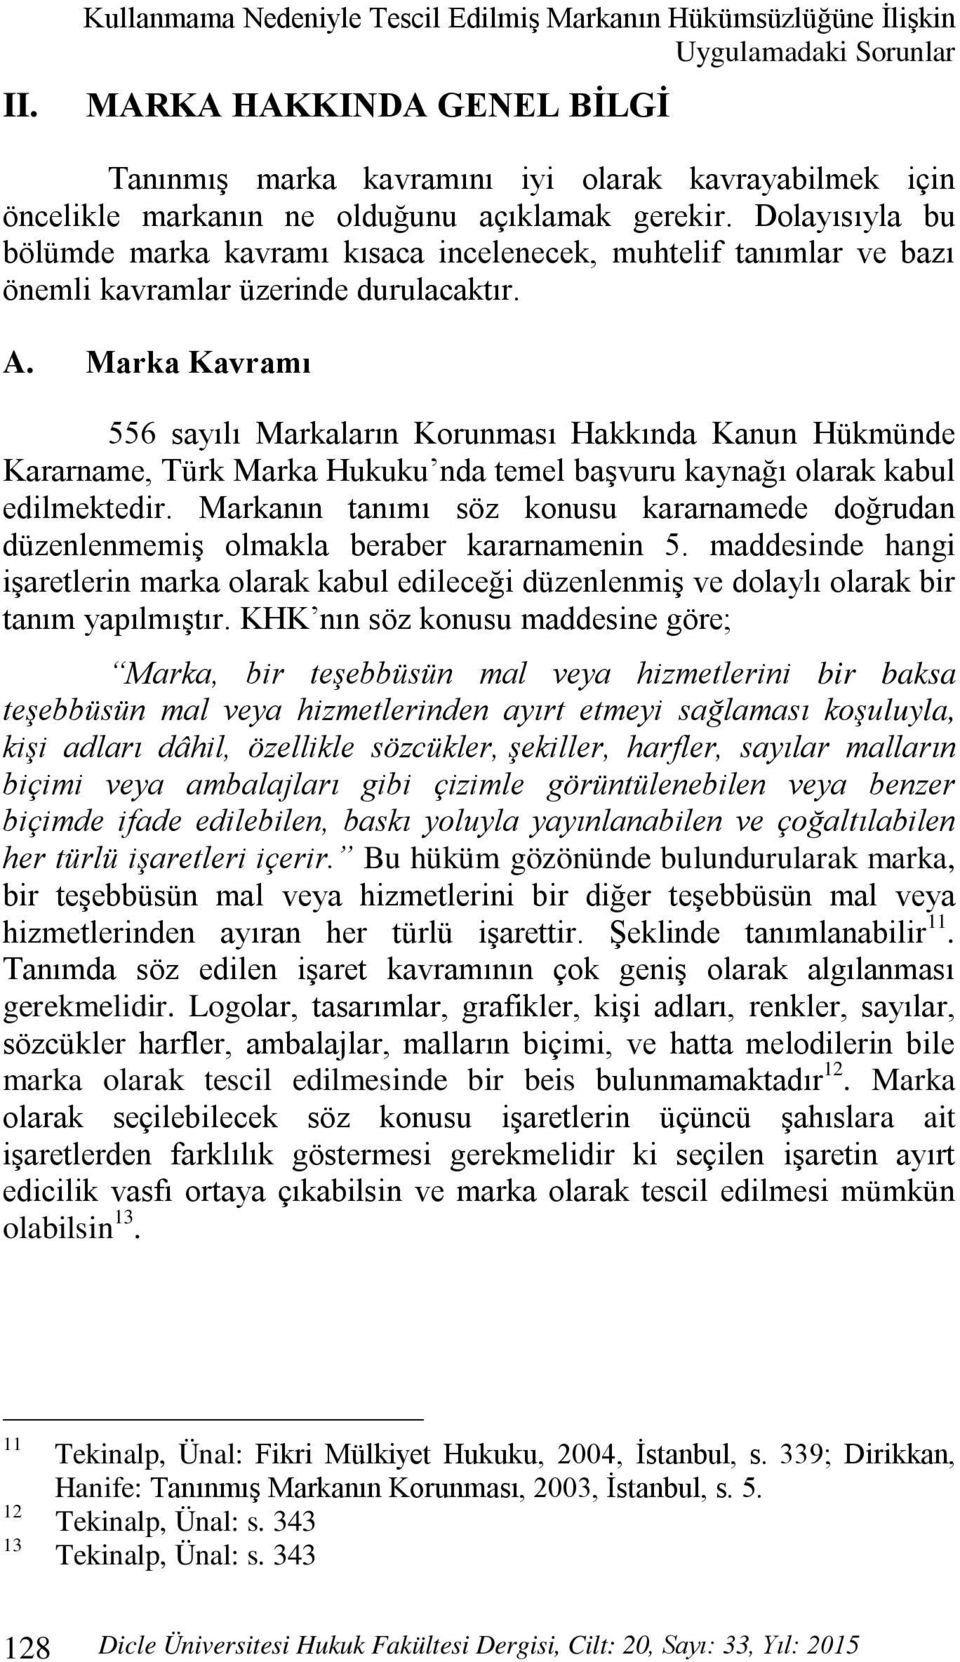 Marka Kavramı 556 sayılı Markaların Korunması Hakkında Kanun Hükmünde Kararname, Türk Marka Hukuku nda temel başvuru kaynağı olarak kabul edilmektedir.